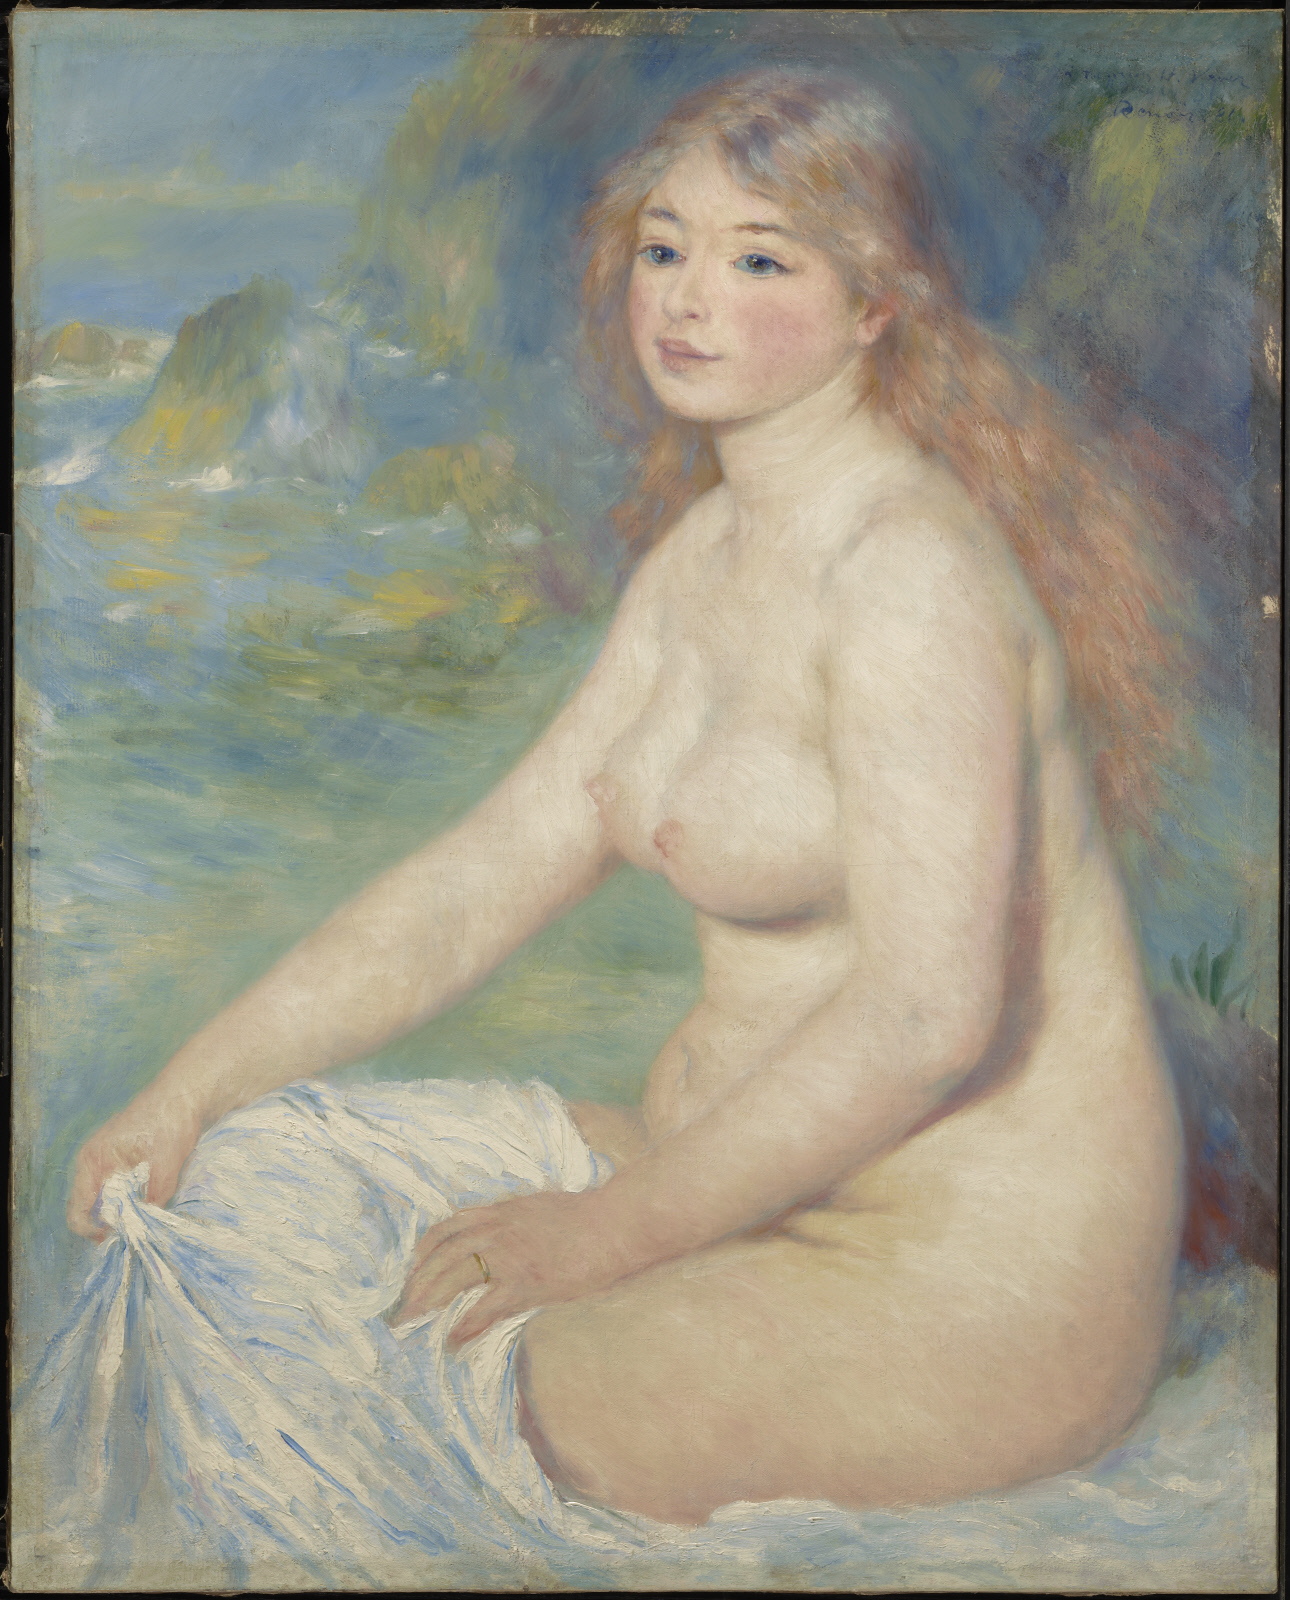 水浴する金髪の女性 by Pierre-Auguste Renoir - 1881年 - 81.6 x 65.4 cm 